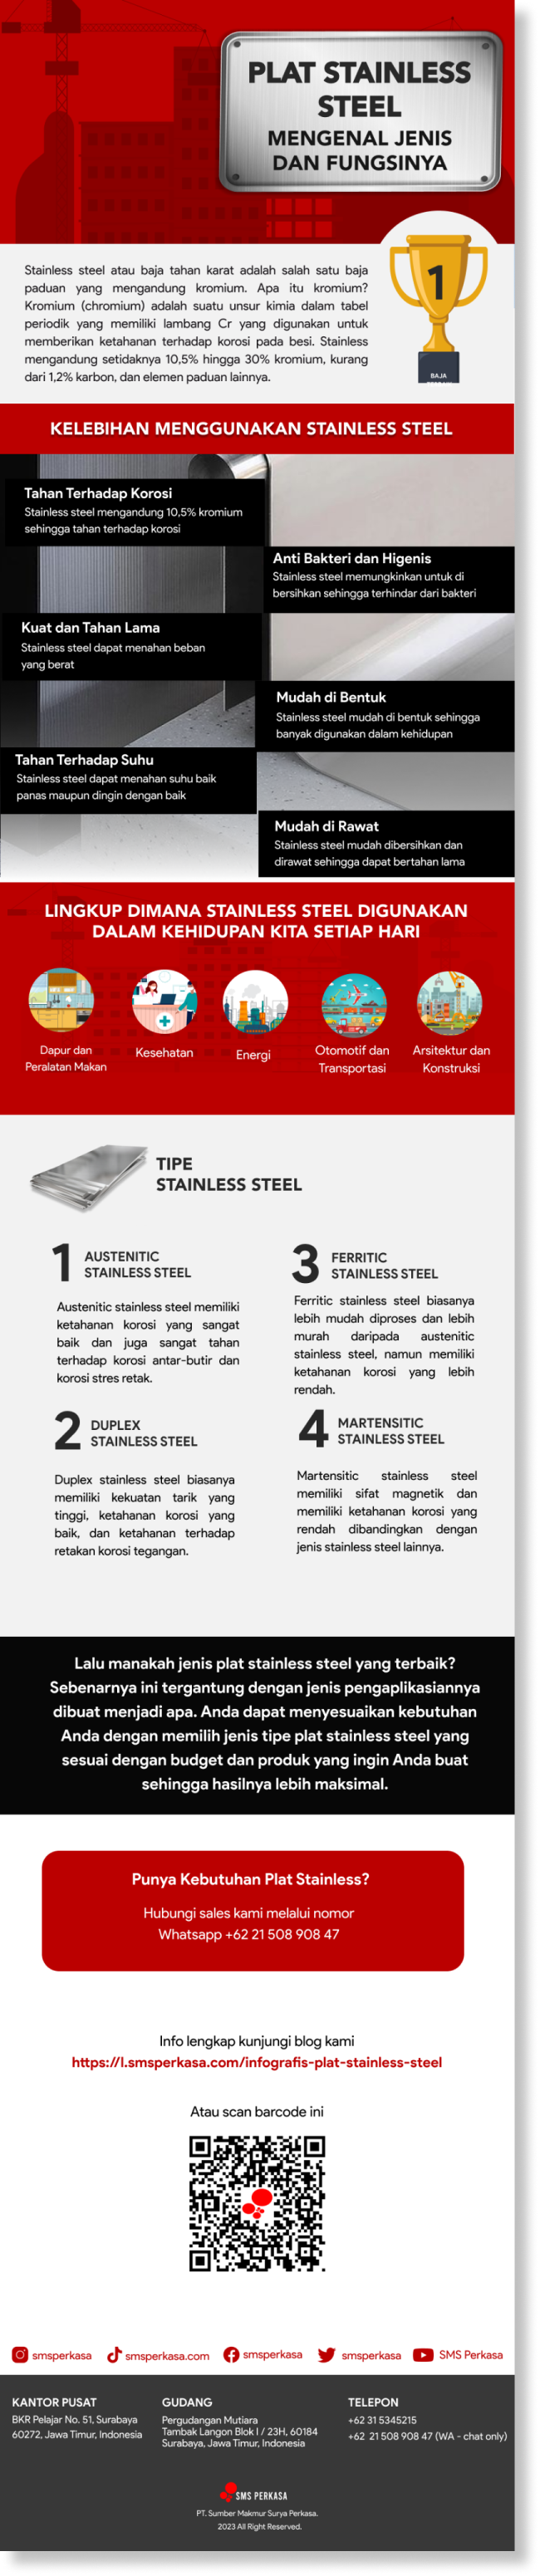 Infografis mengenal jenis dan fungsi plat stainless steel